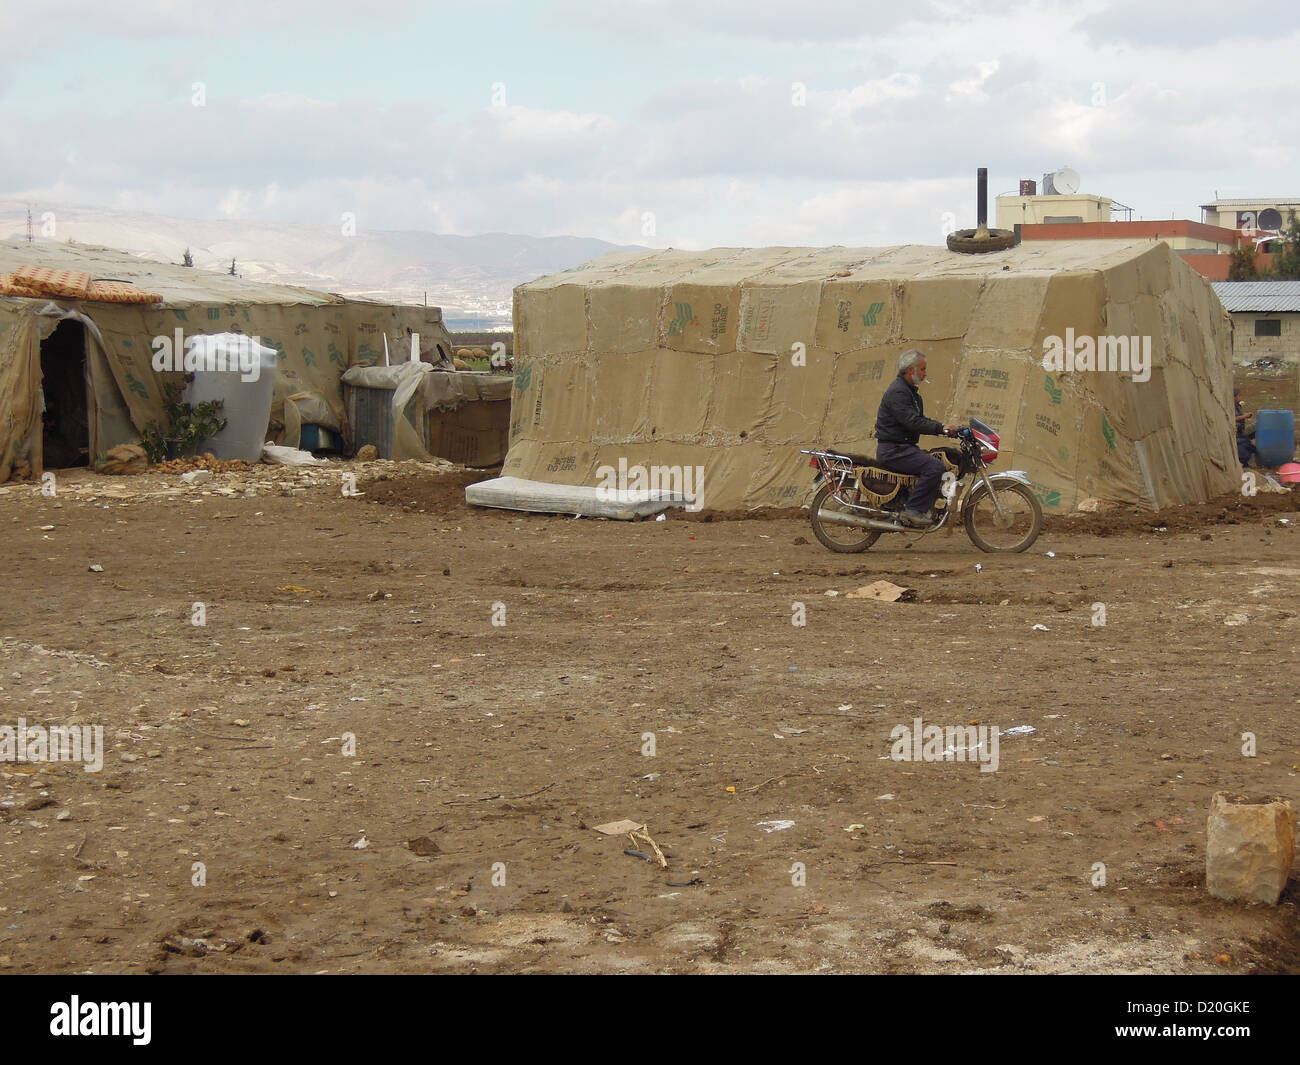 Un campo per rifugiati siriano vicino alla città zahl in sout libano. Il baracks sono realizzati da tarp su telai di legno. Foto Stock